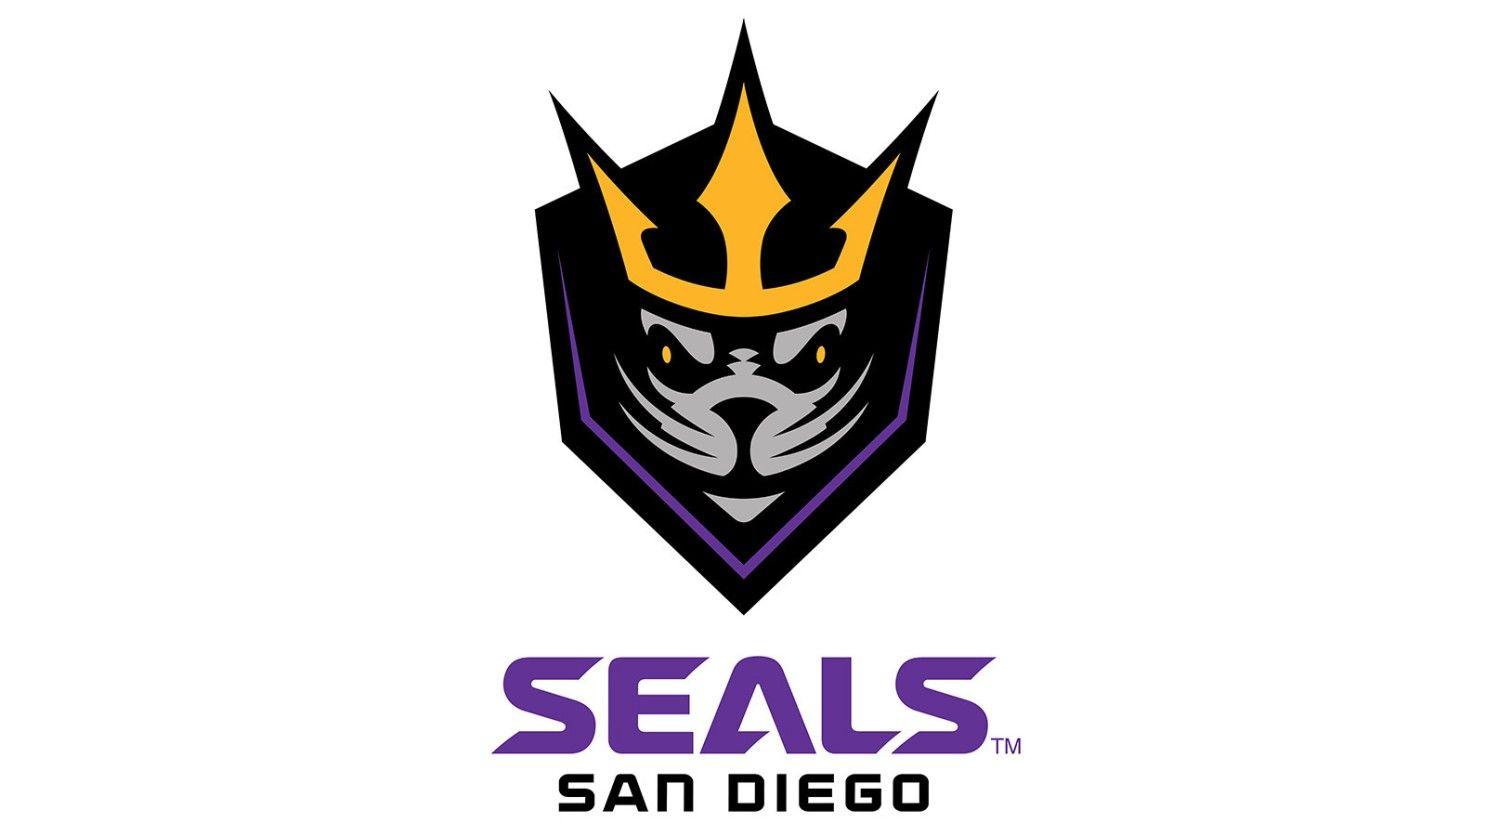 Seals Logo - A LAX San Diego team name: Seals - The San Diego Union-Tribune